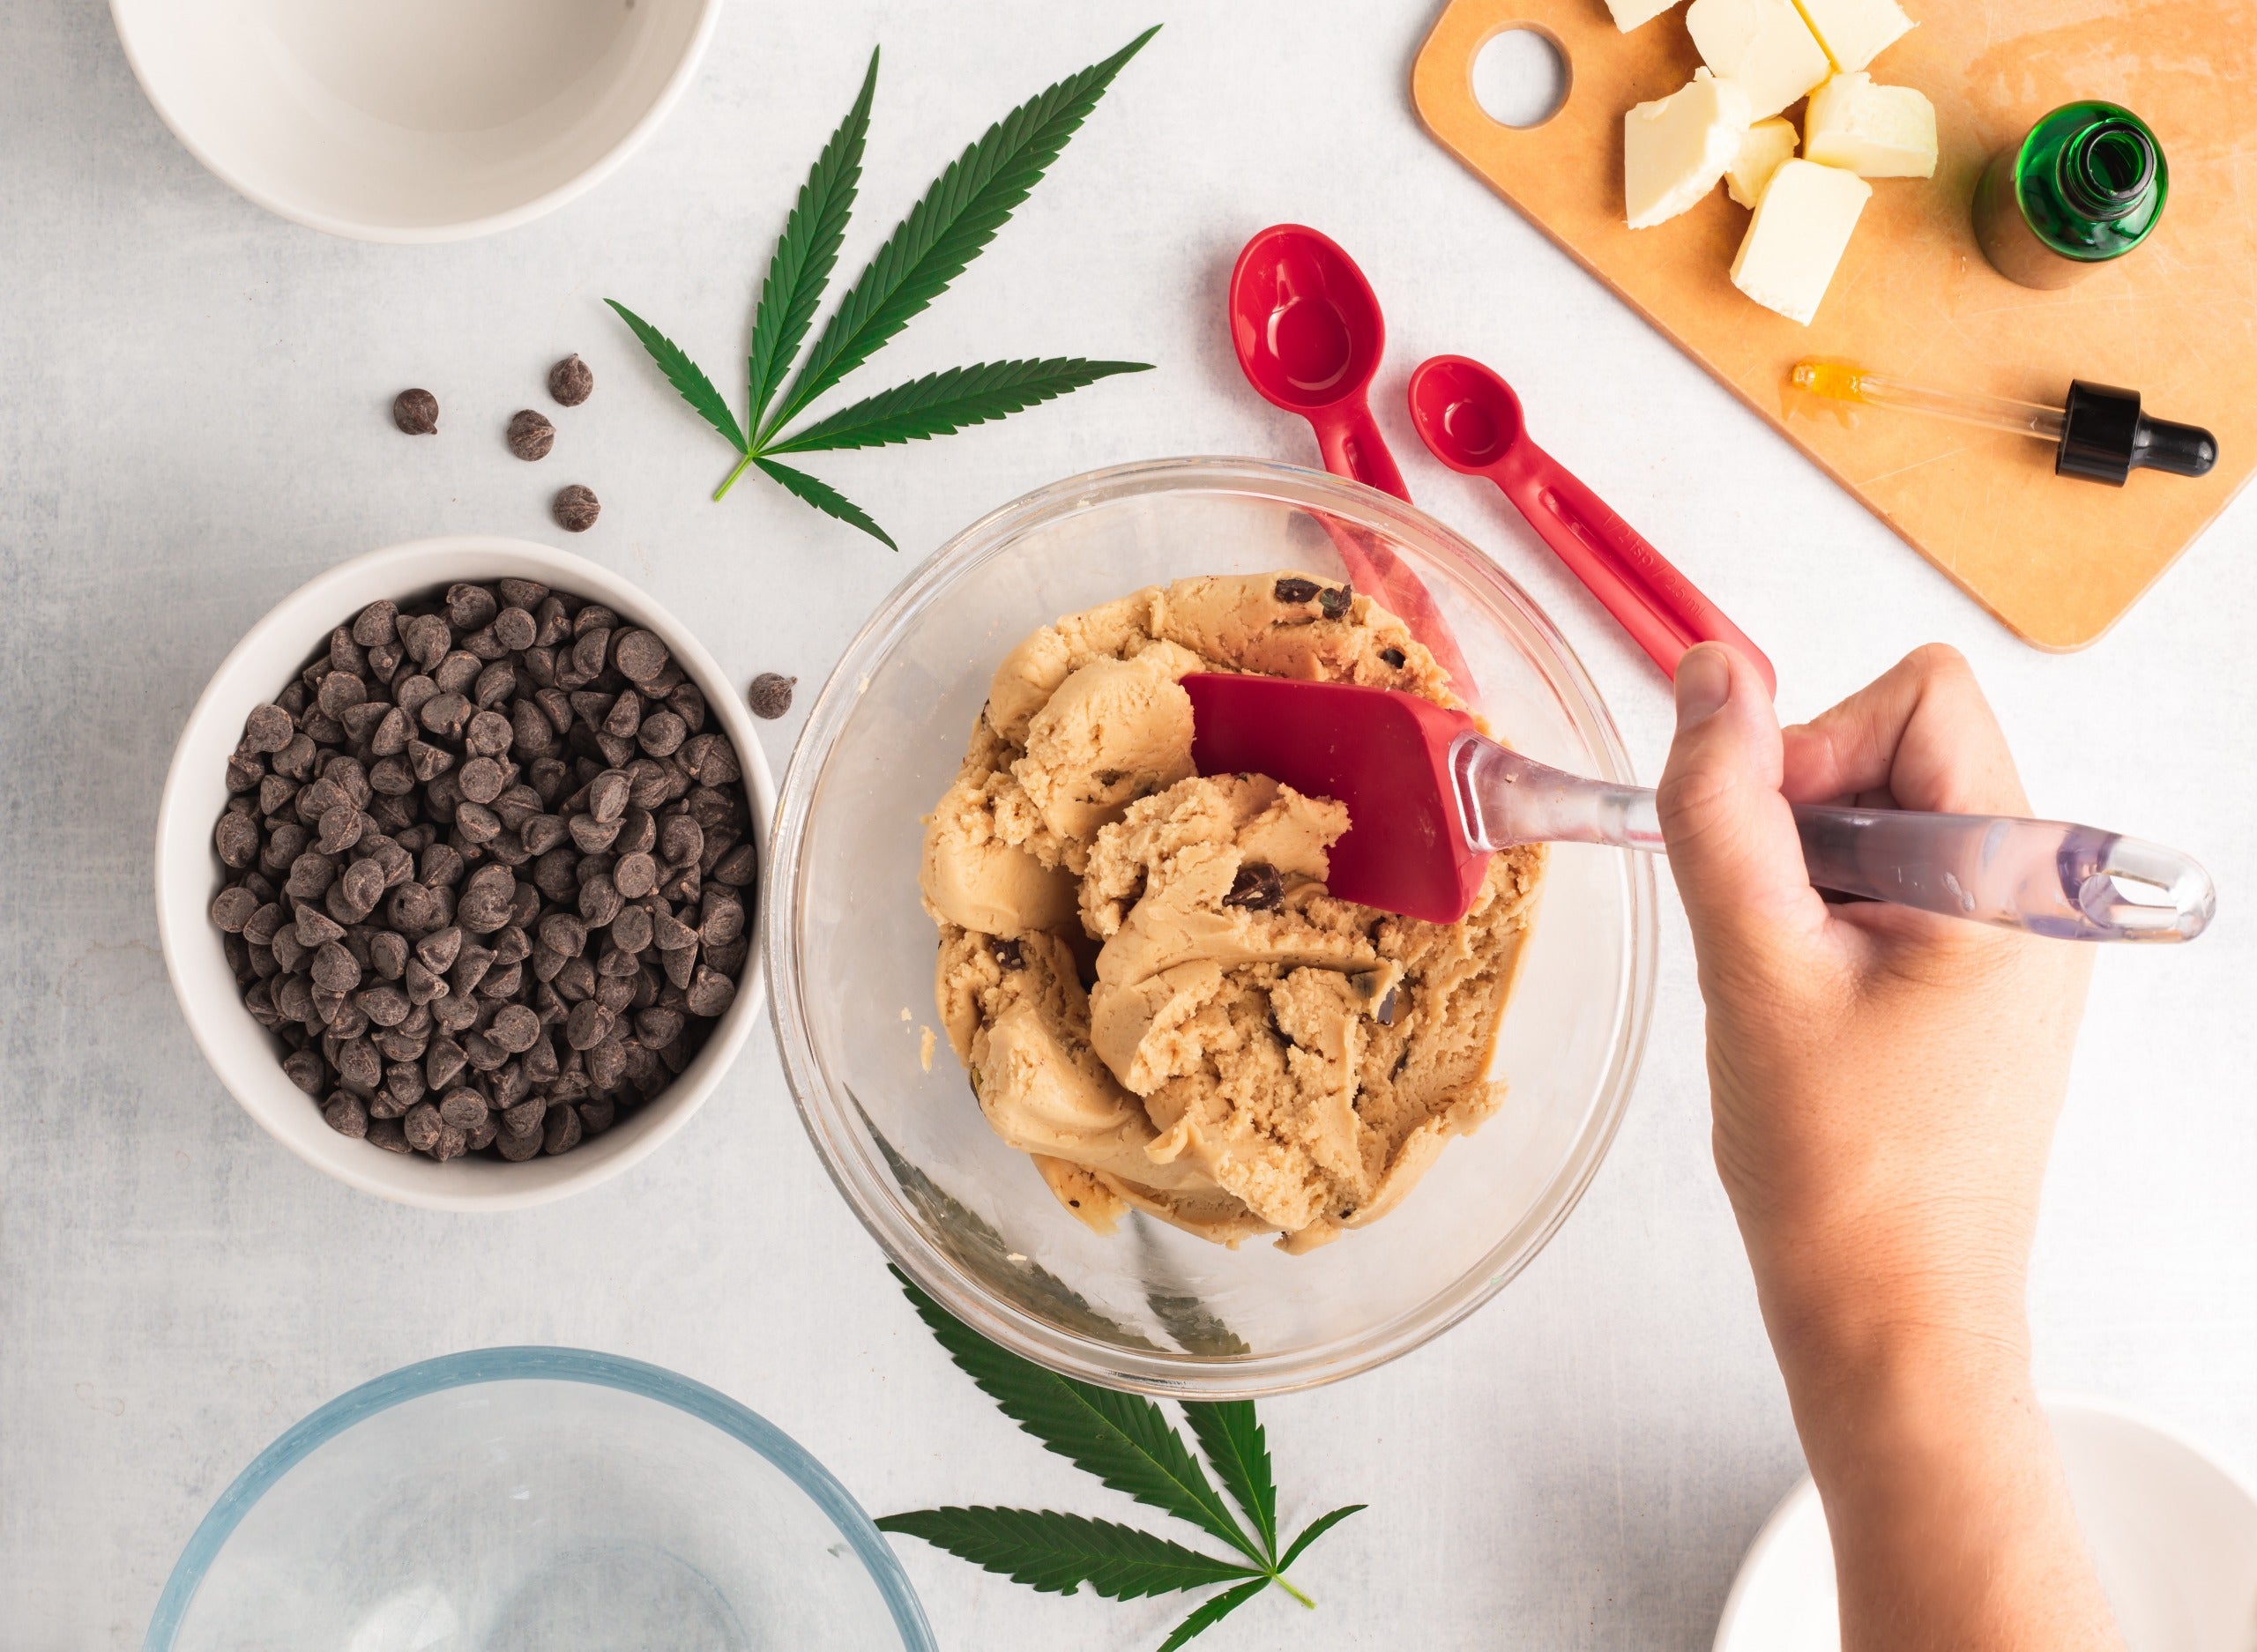 How To Make Marijuana Cookies: A Comprehensive Guide